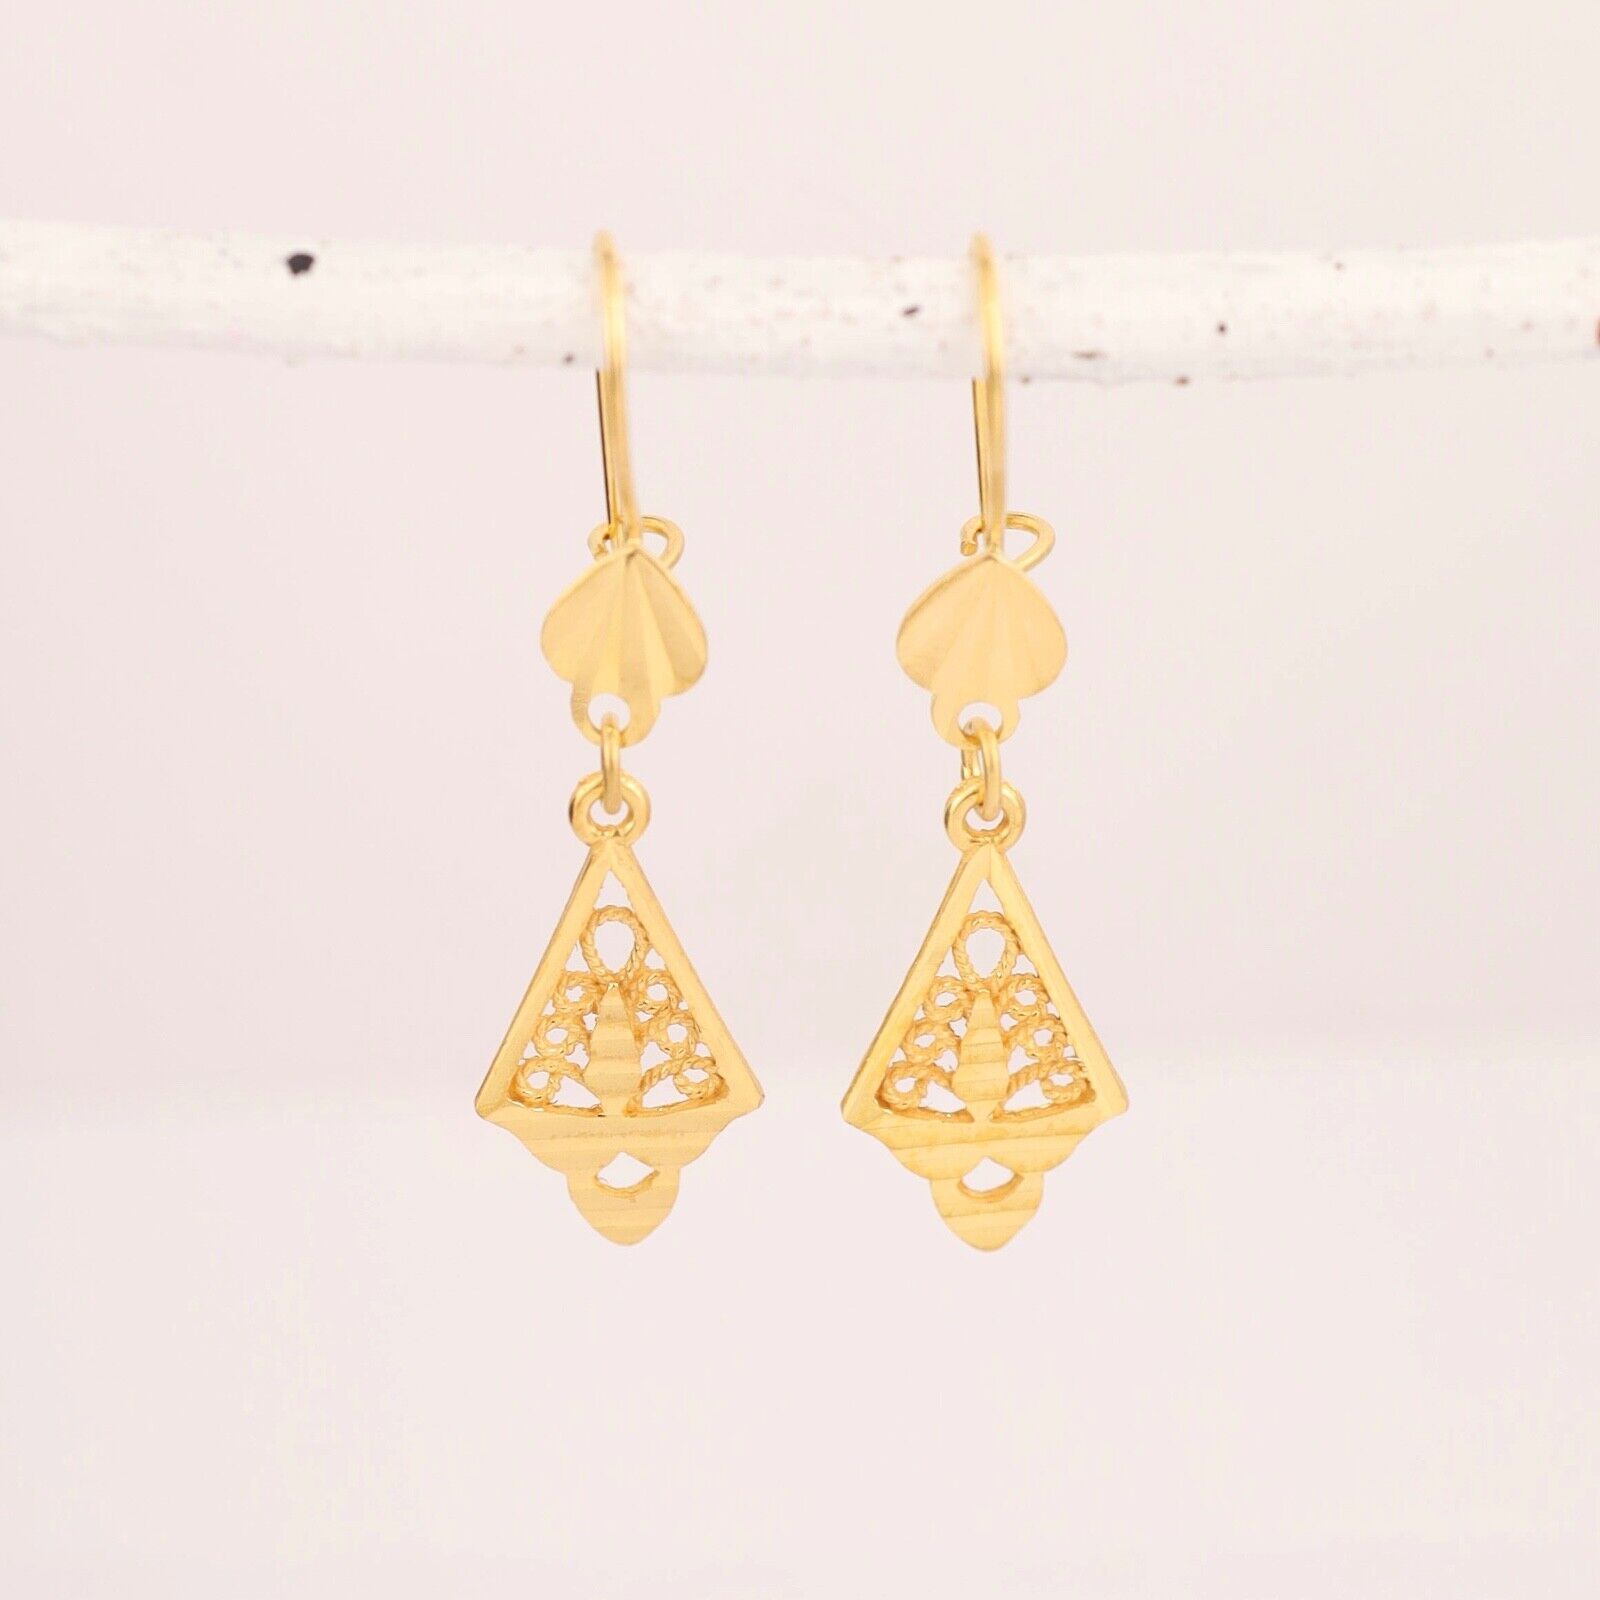 Dangling Earrings 21k Yellow Gold E029